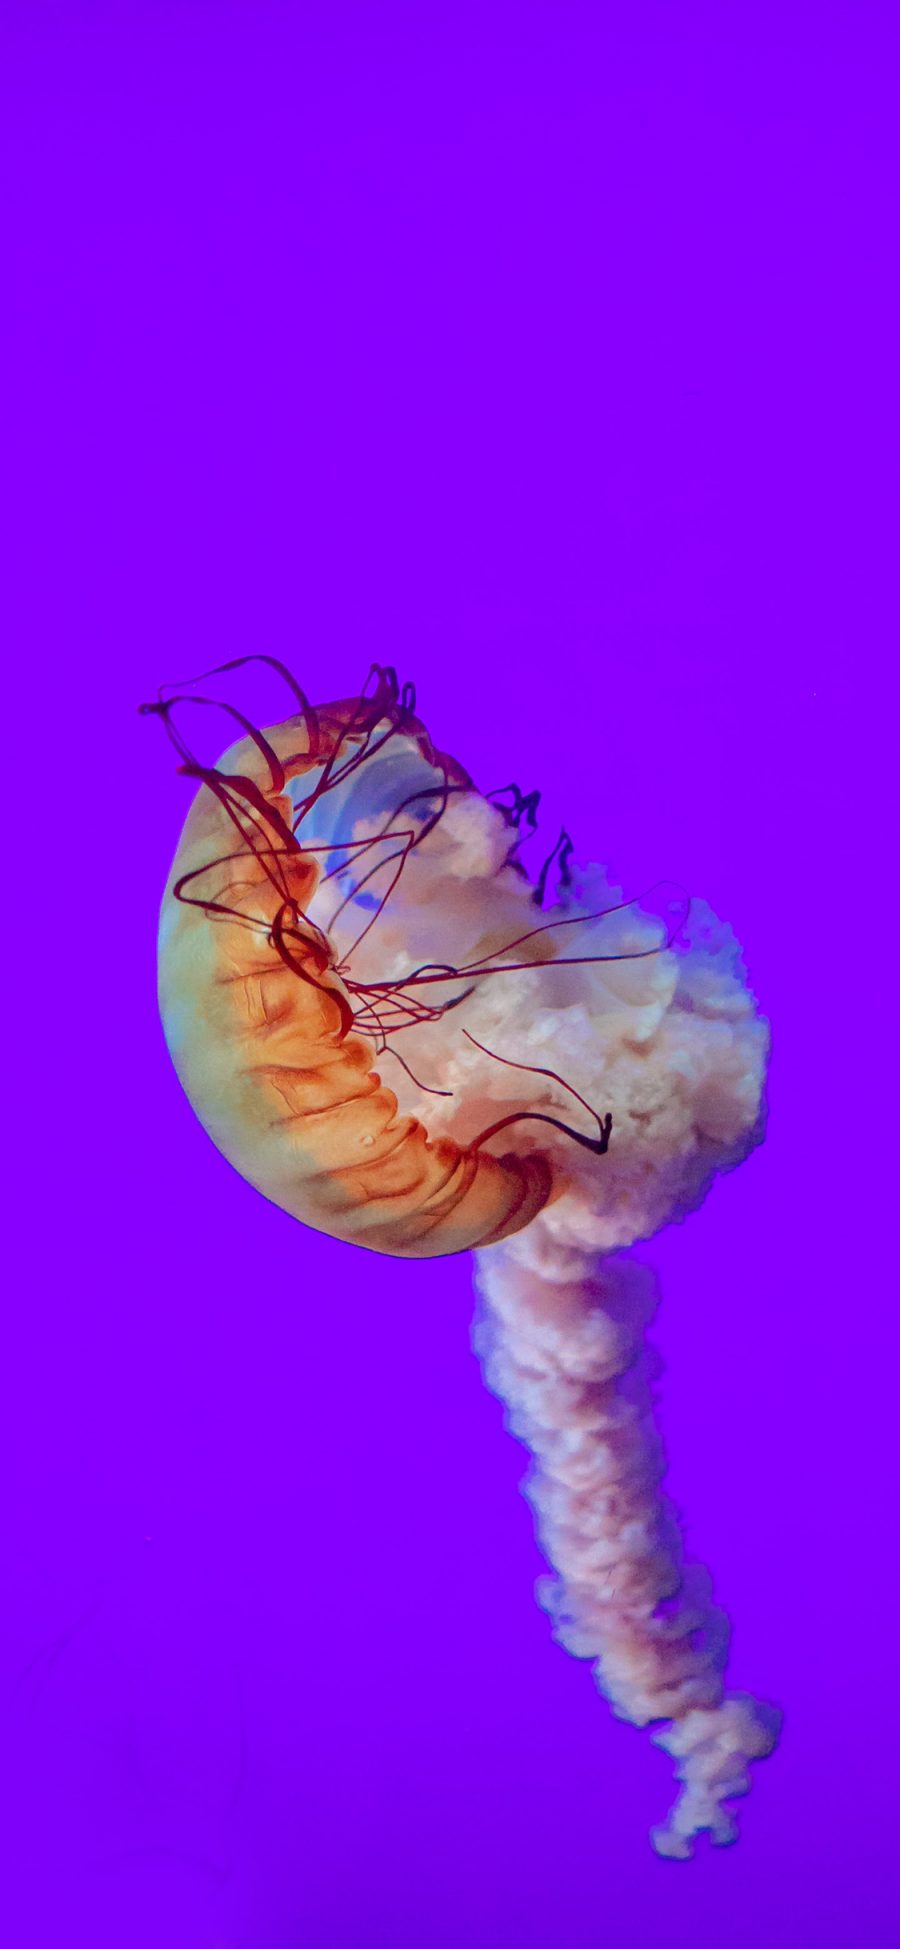 [2436×1125]水母 浮游 触手 紫 苹果手机壁纸图片